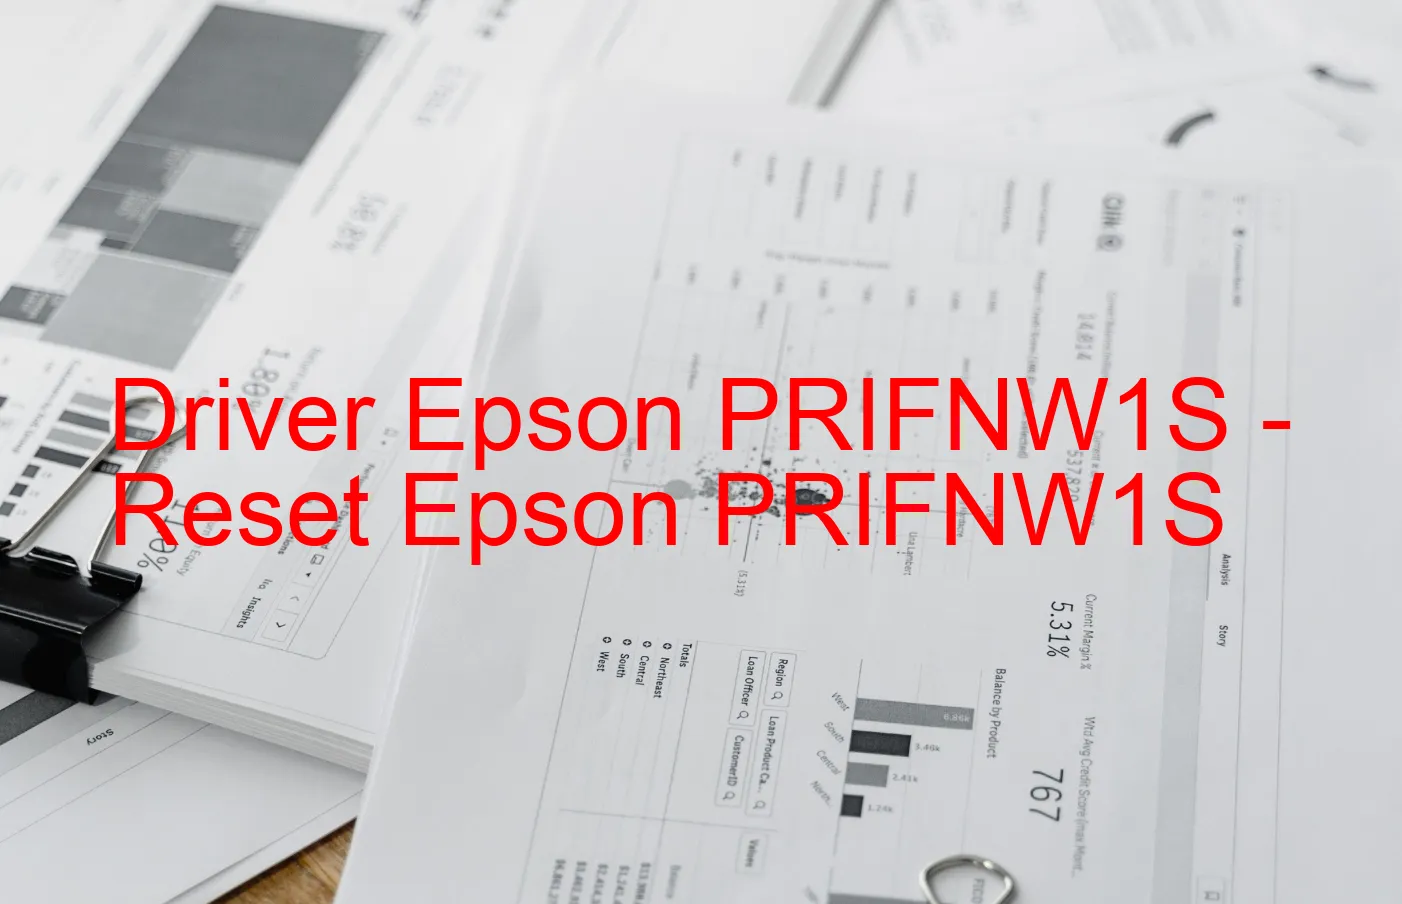 Epson PRIFNW1Sのドライバー、Epson PRIFNW1Sのリセットソフトウェア